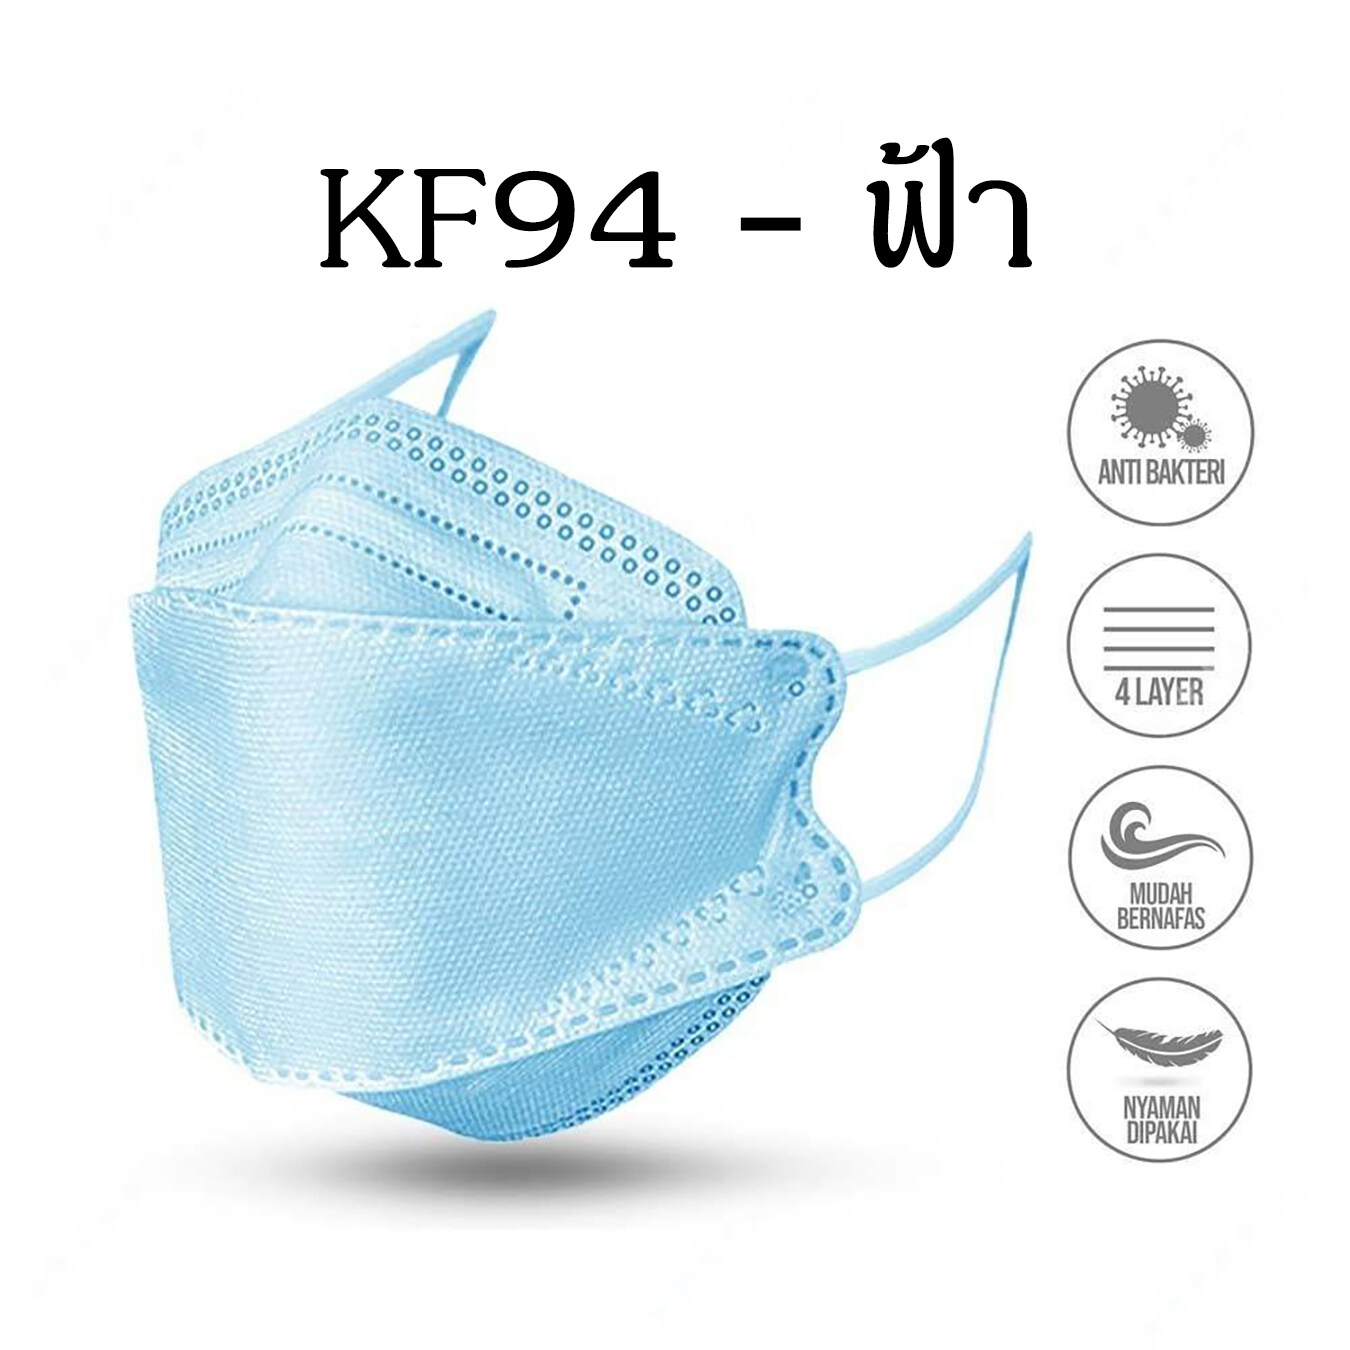 หน้ากากกันฝุ่น หน้ากากอนามัยKF94 ป้องกันเชื้อโรค PM2.5 ทรงเกาหลี หน้ากากอนามัย ผู้ใหญ่ รุ่นเกาหลี KF94 แมสเกาหลี